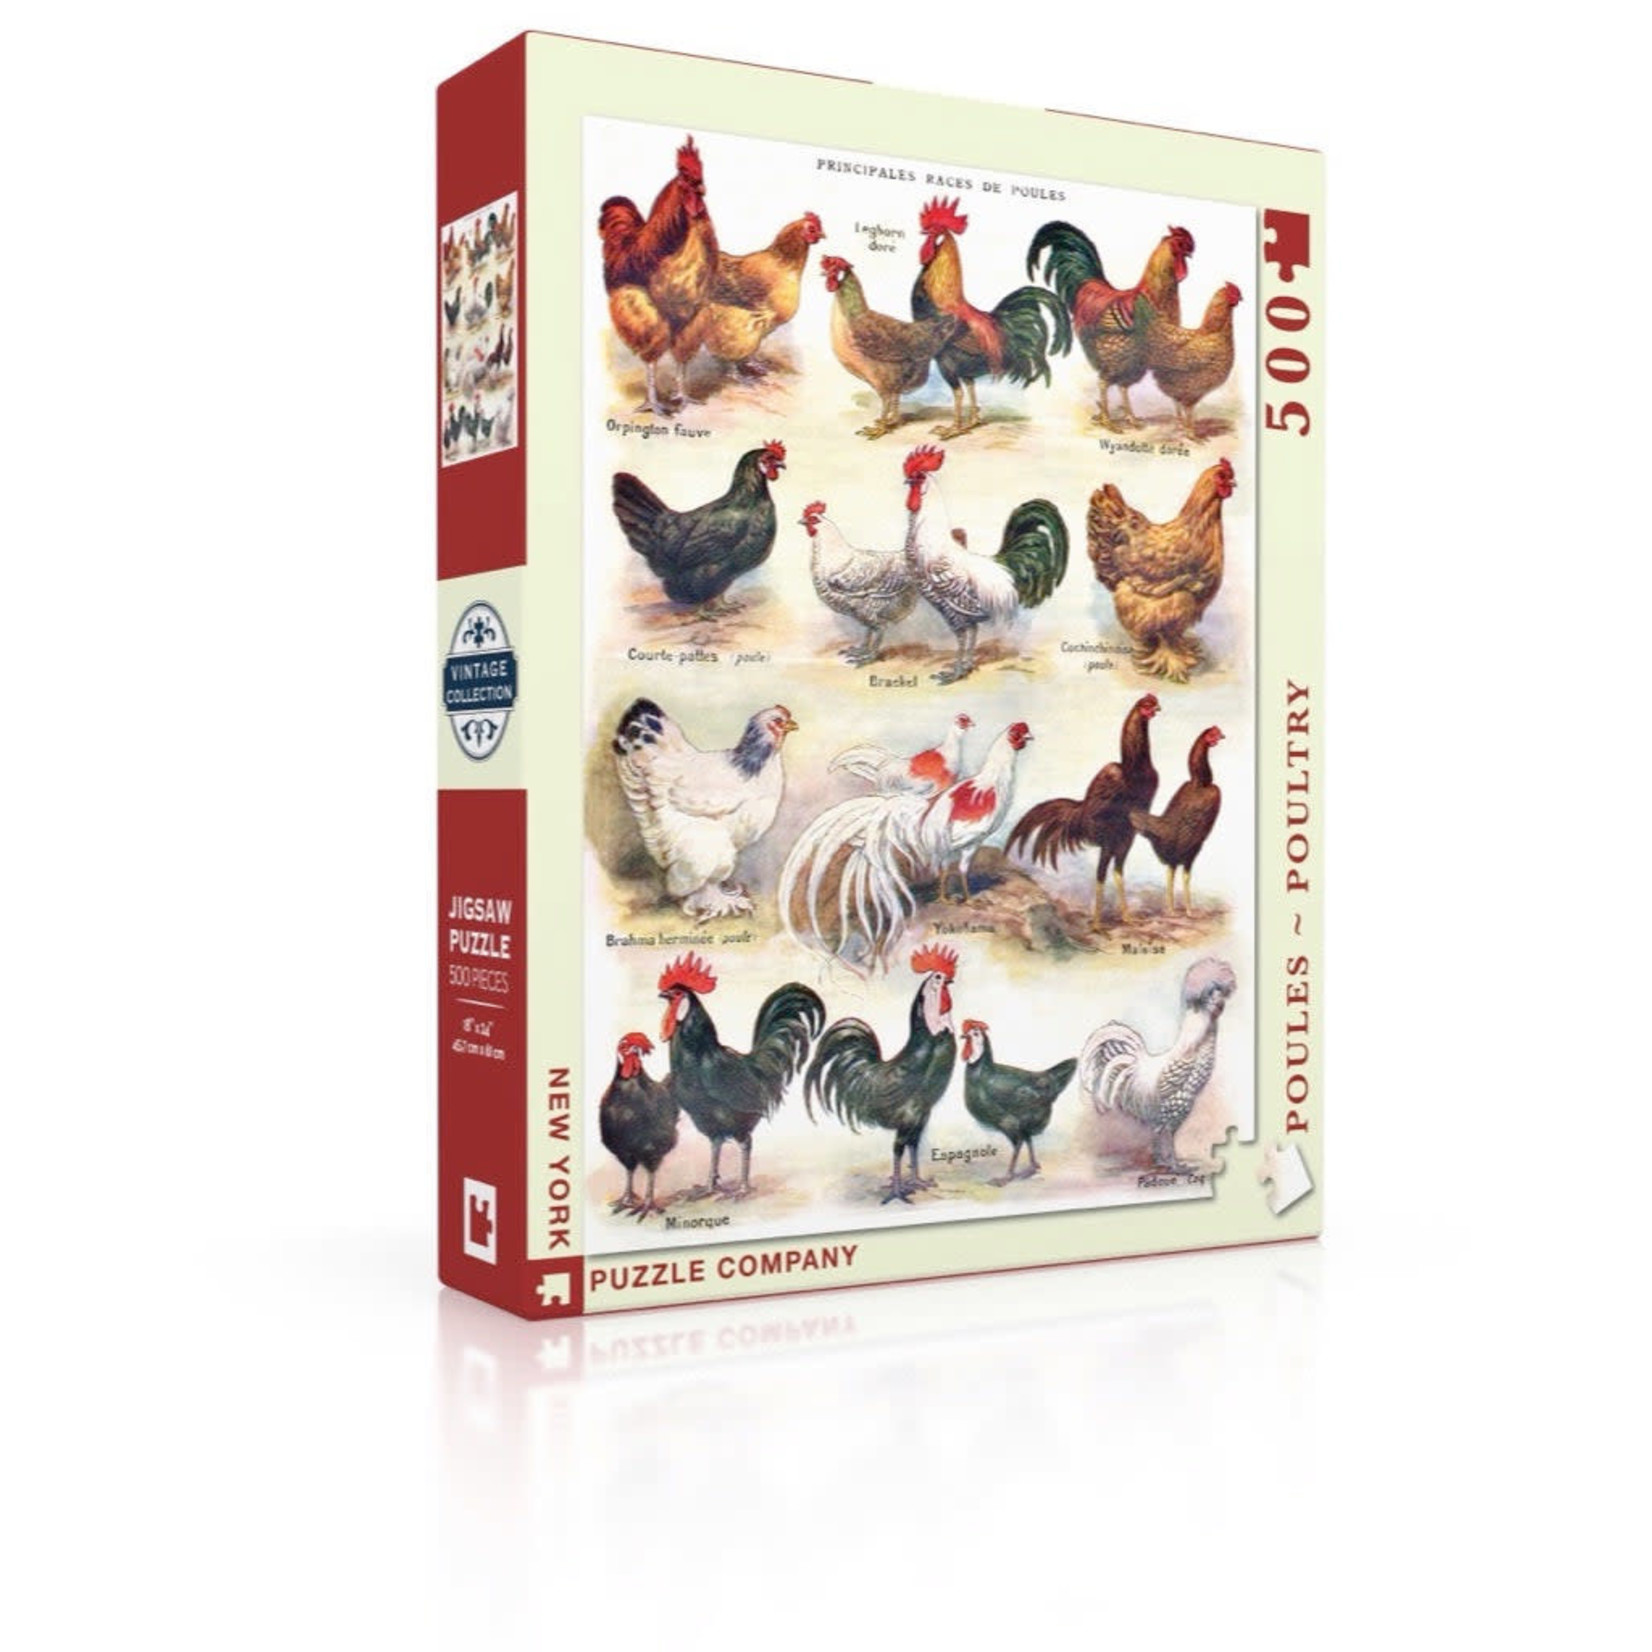 New York Puzzle Co Vintage Collection - Poules ~ Poultry 500 Piece Puzzle